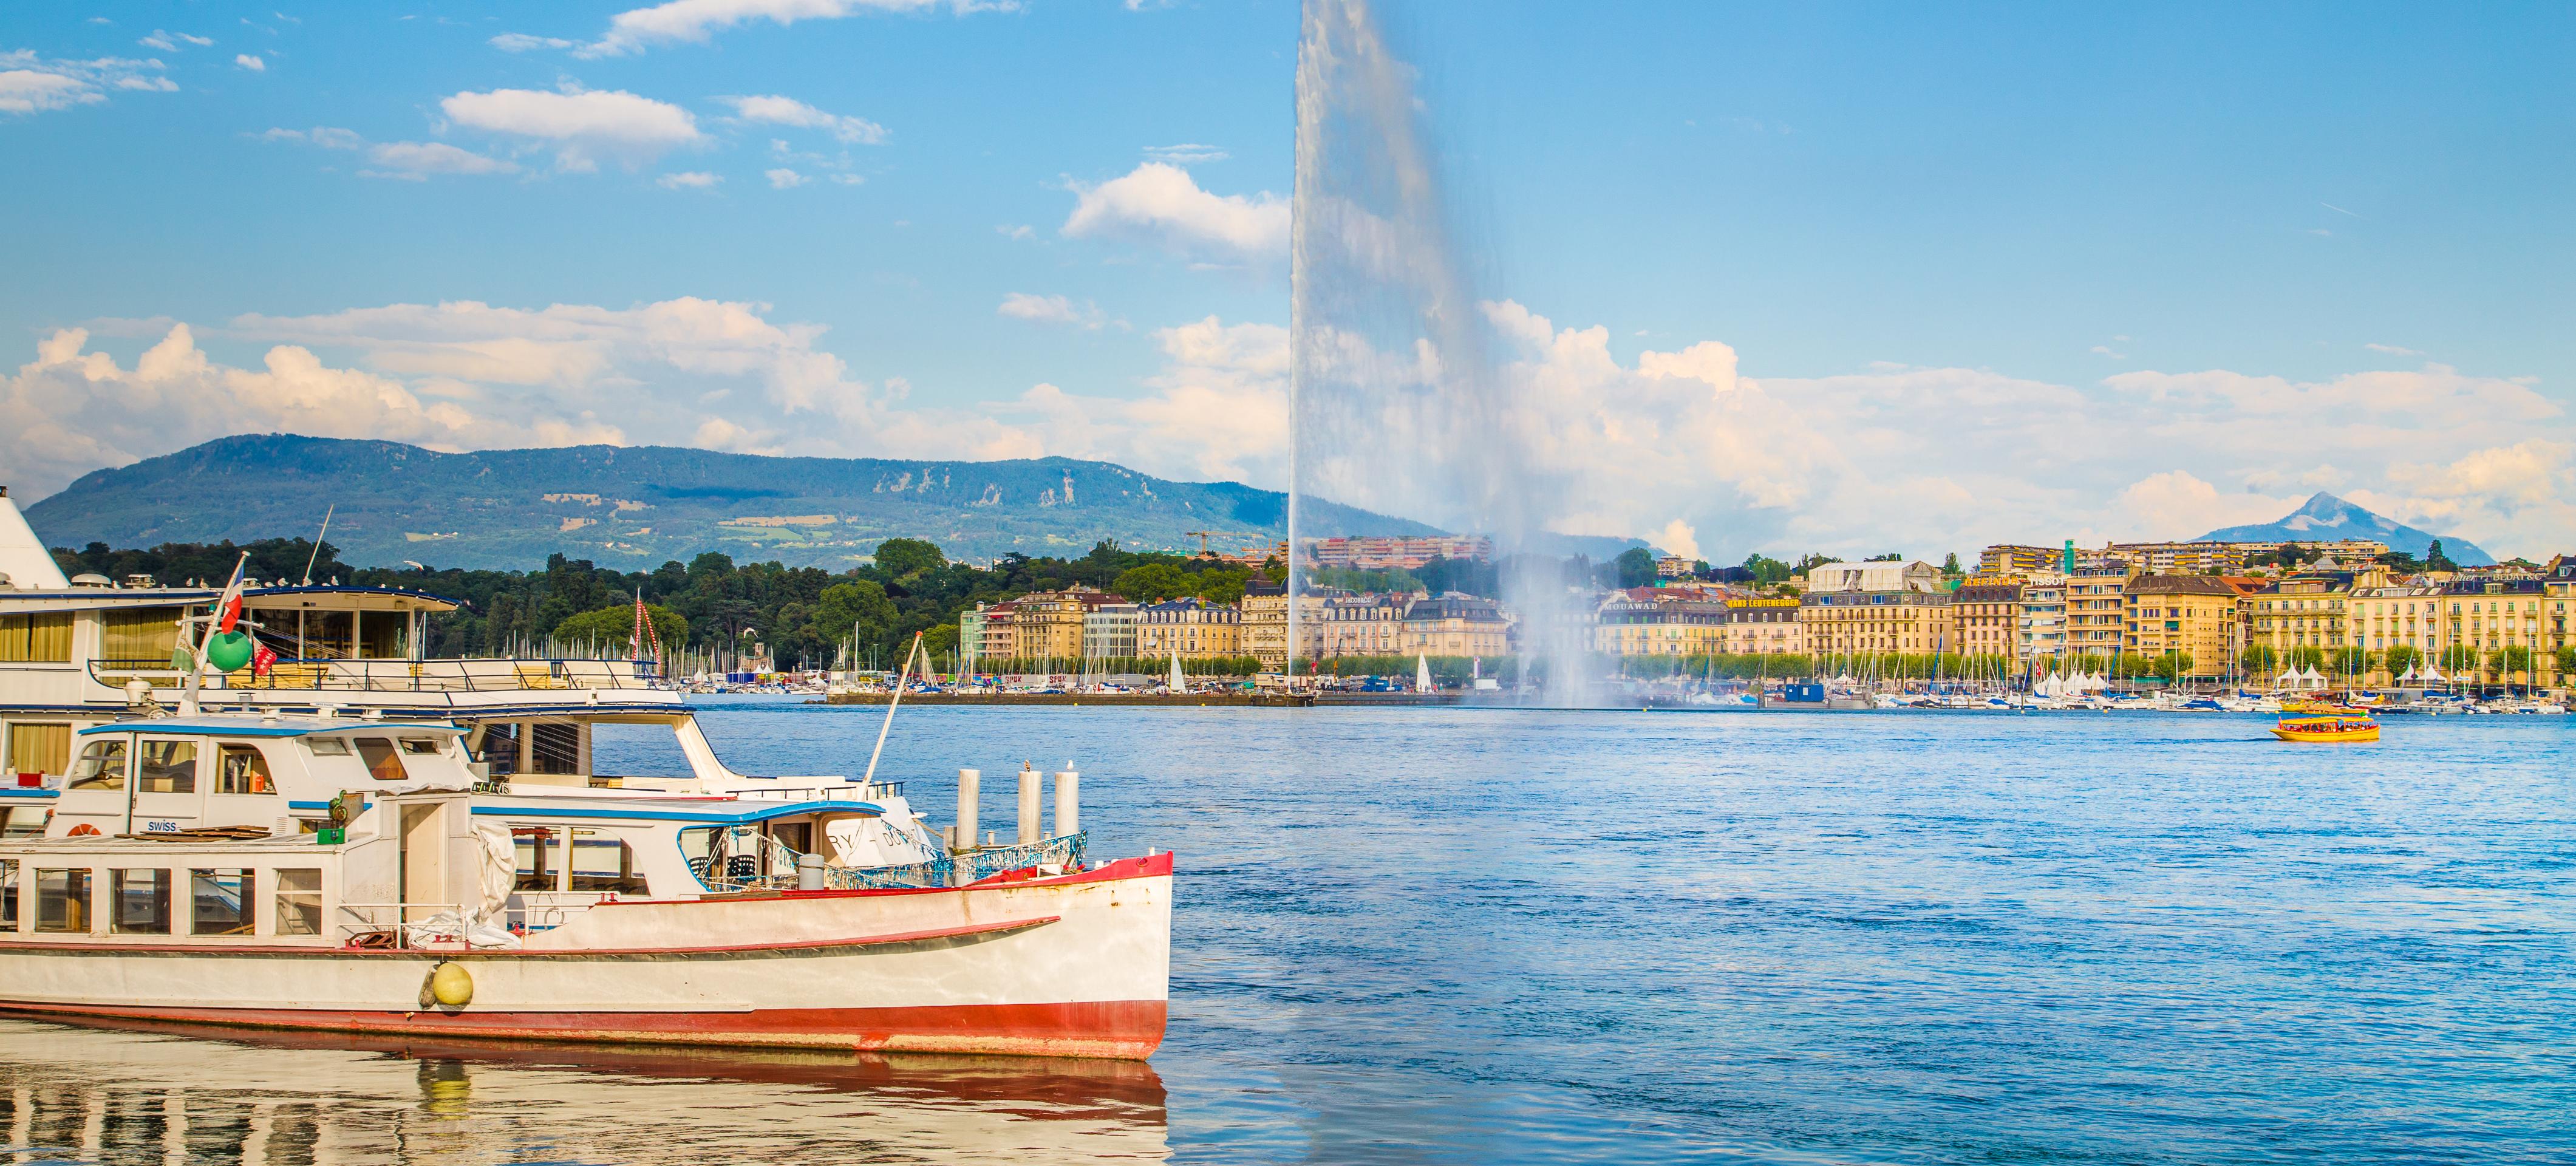 Citytour de Genève et escapade à Annecy - croisière sur le Lac Léman en option